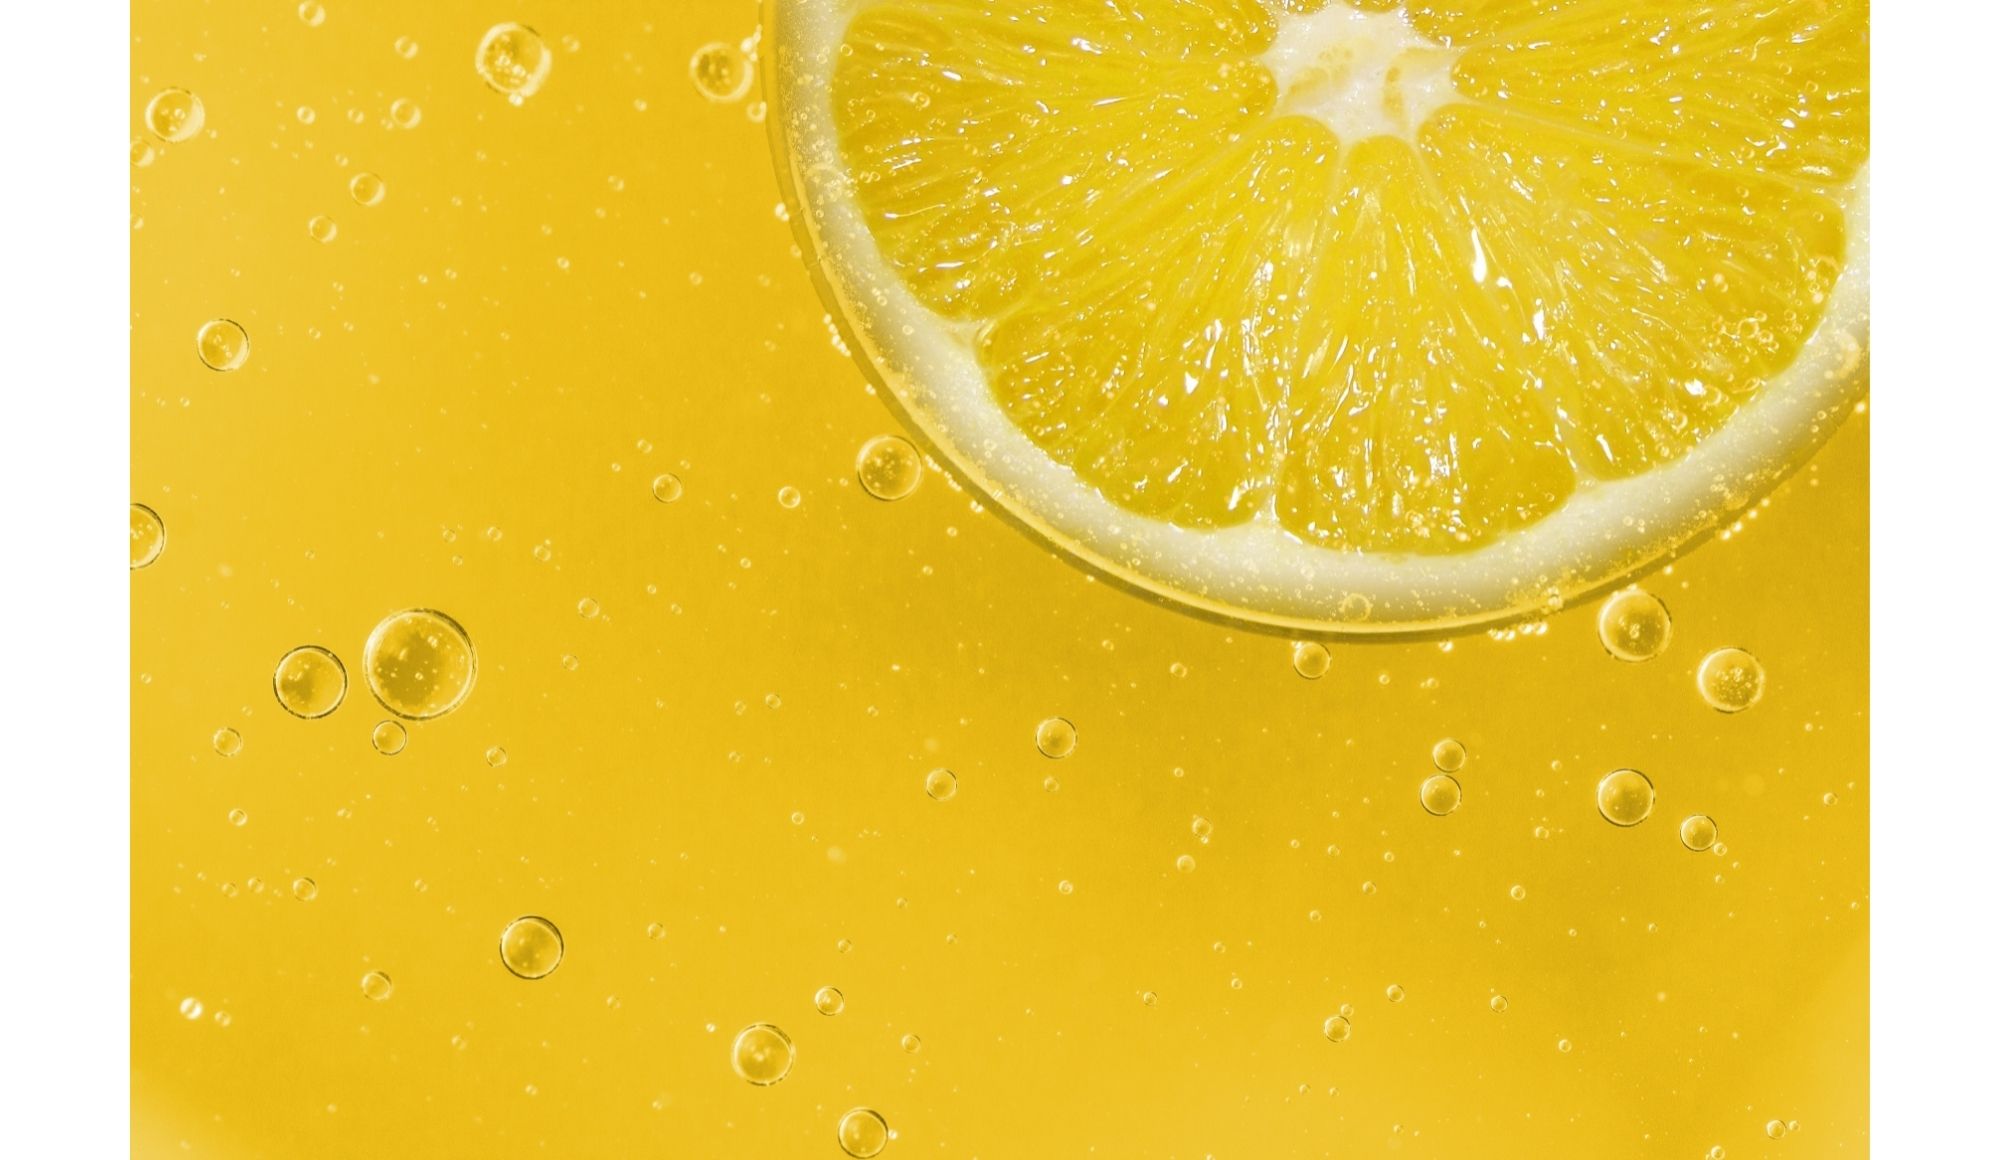 Is It Time To Buy Lemonade?